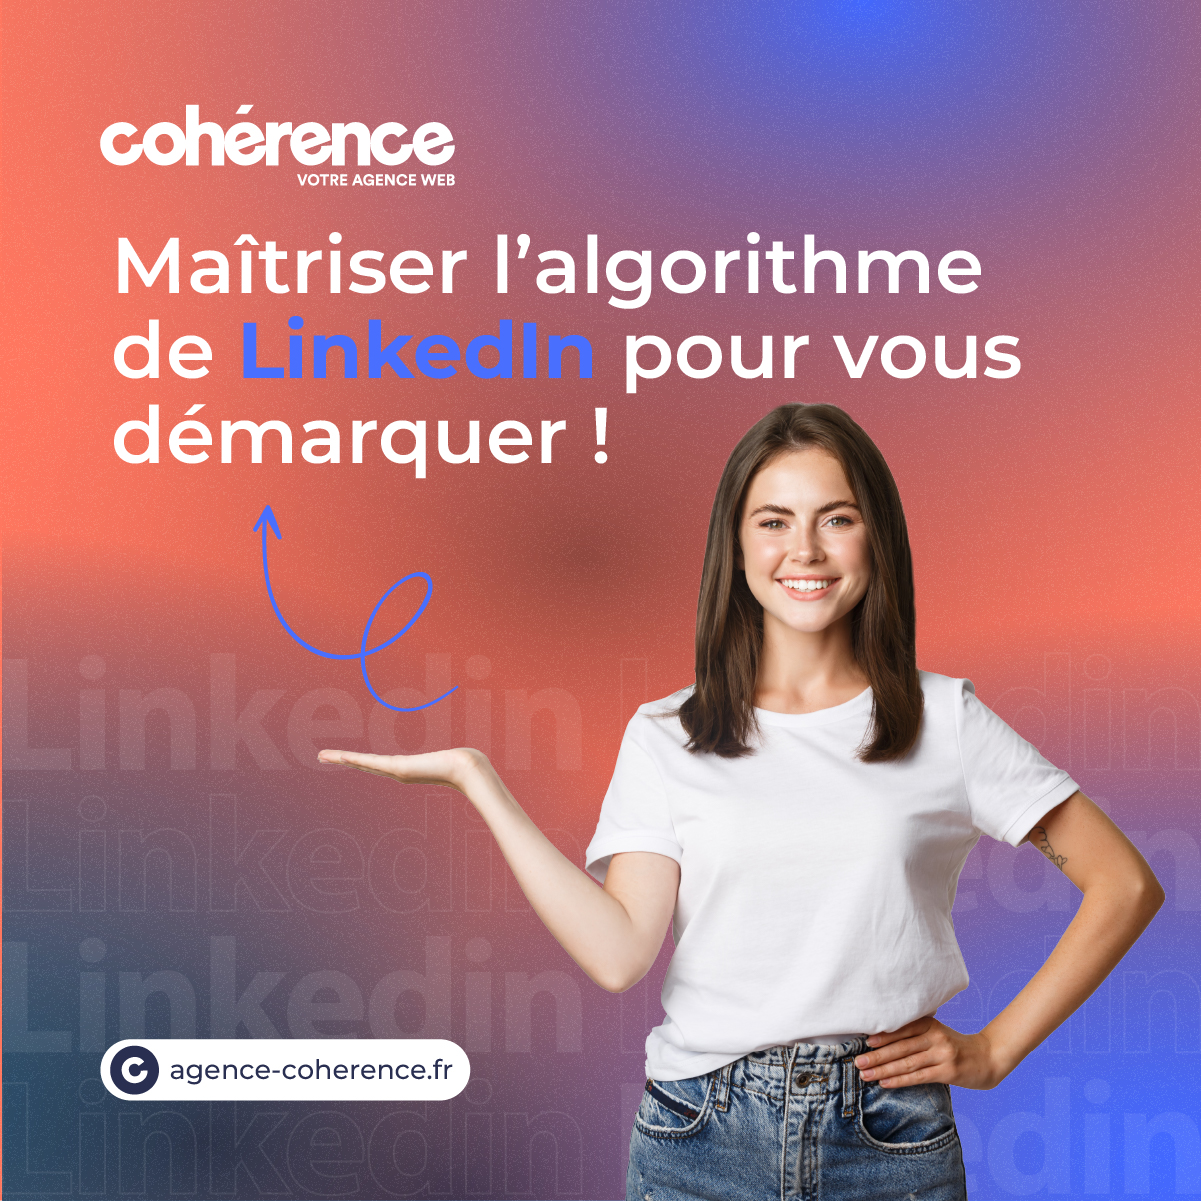 Coherence Agence Digitale Maitriser Lalgorithme De LinkedIn